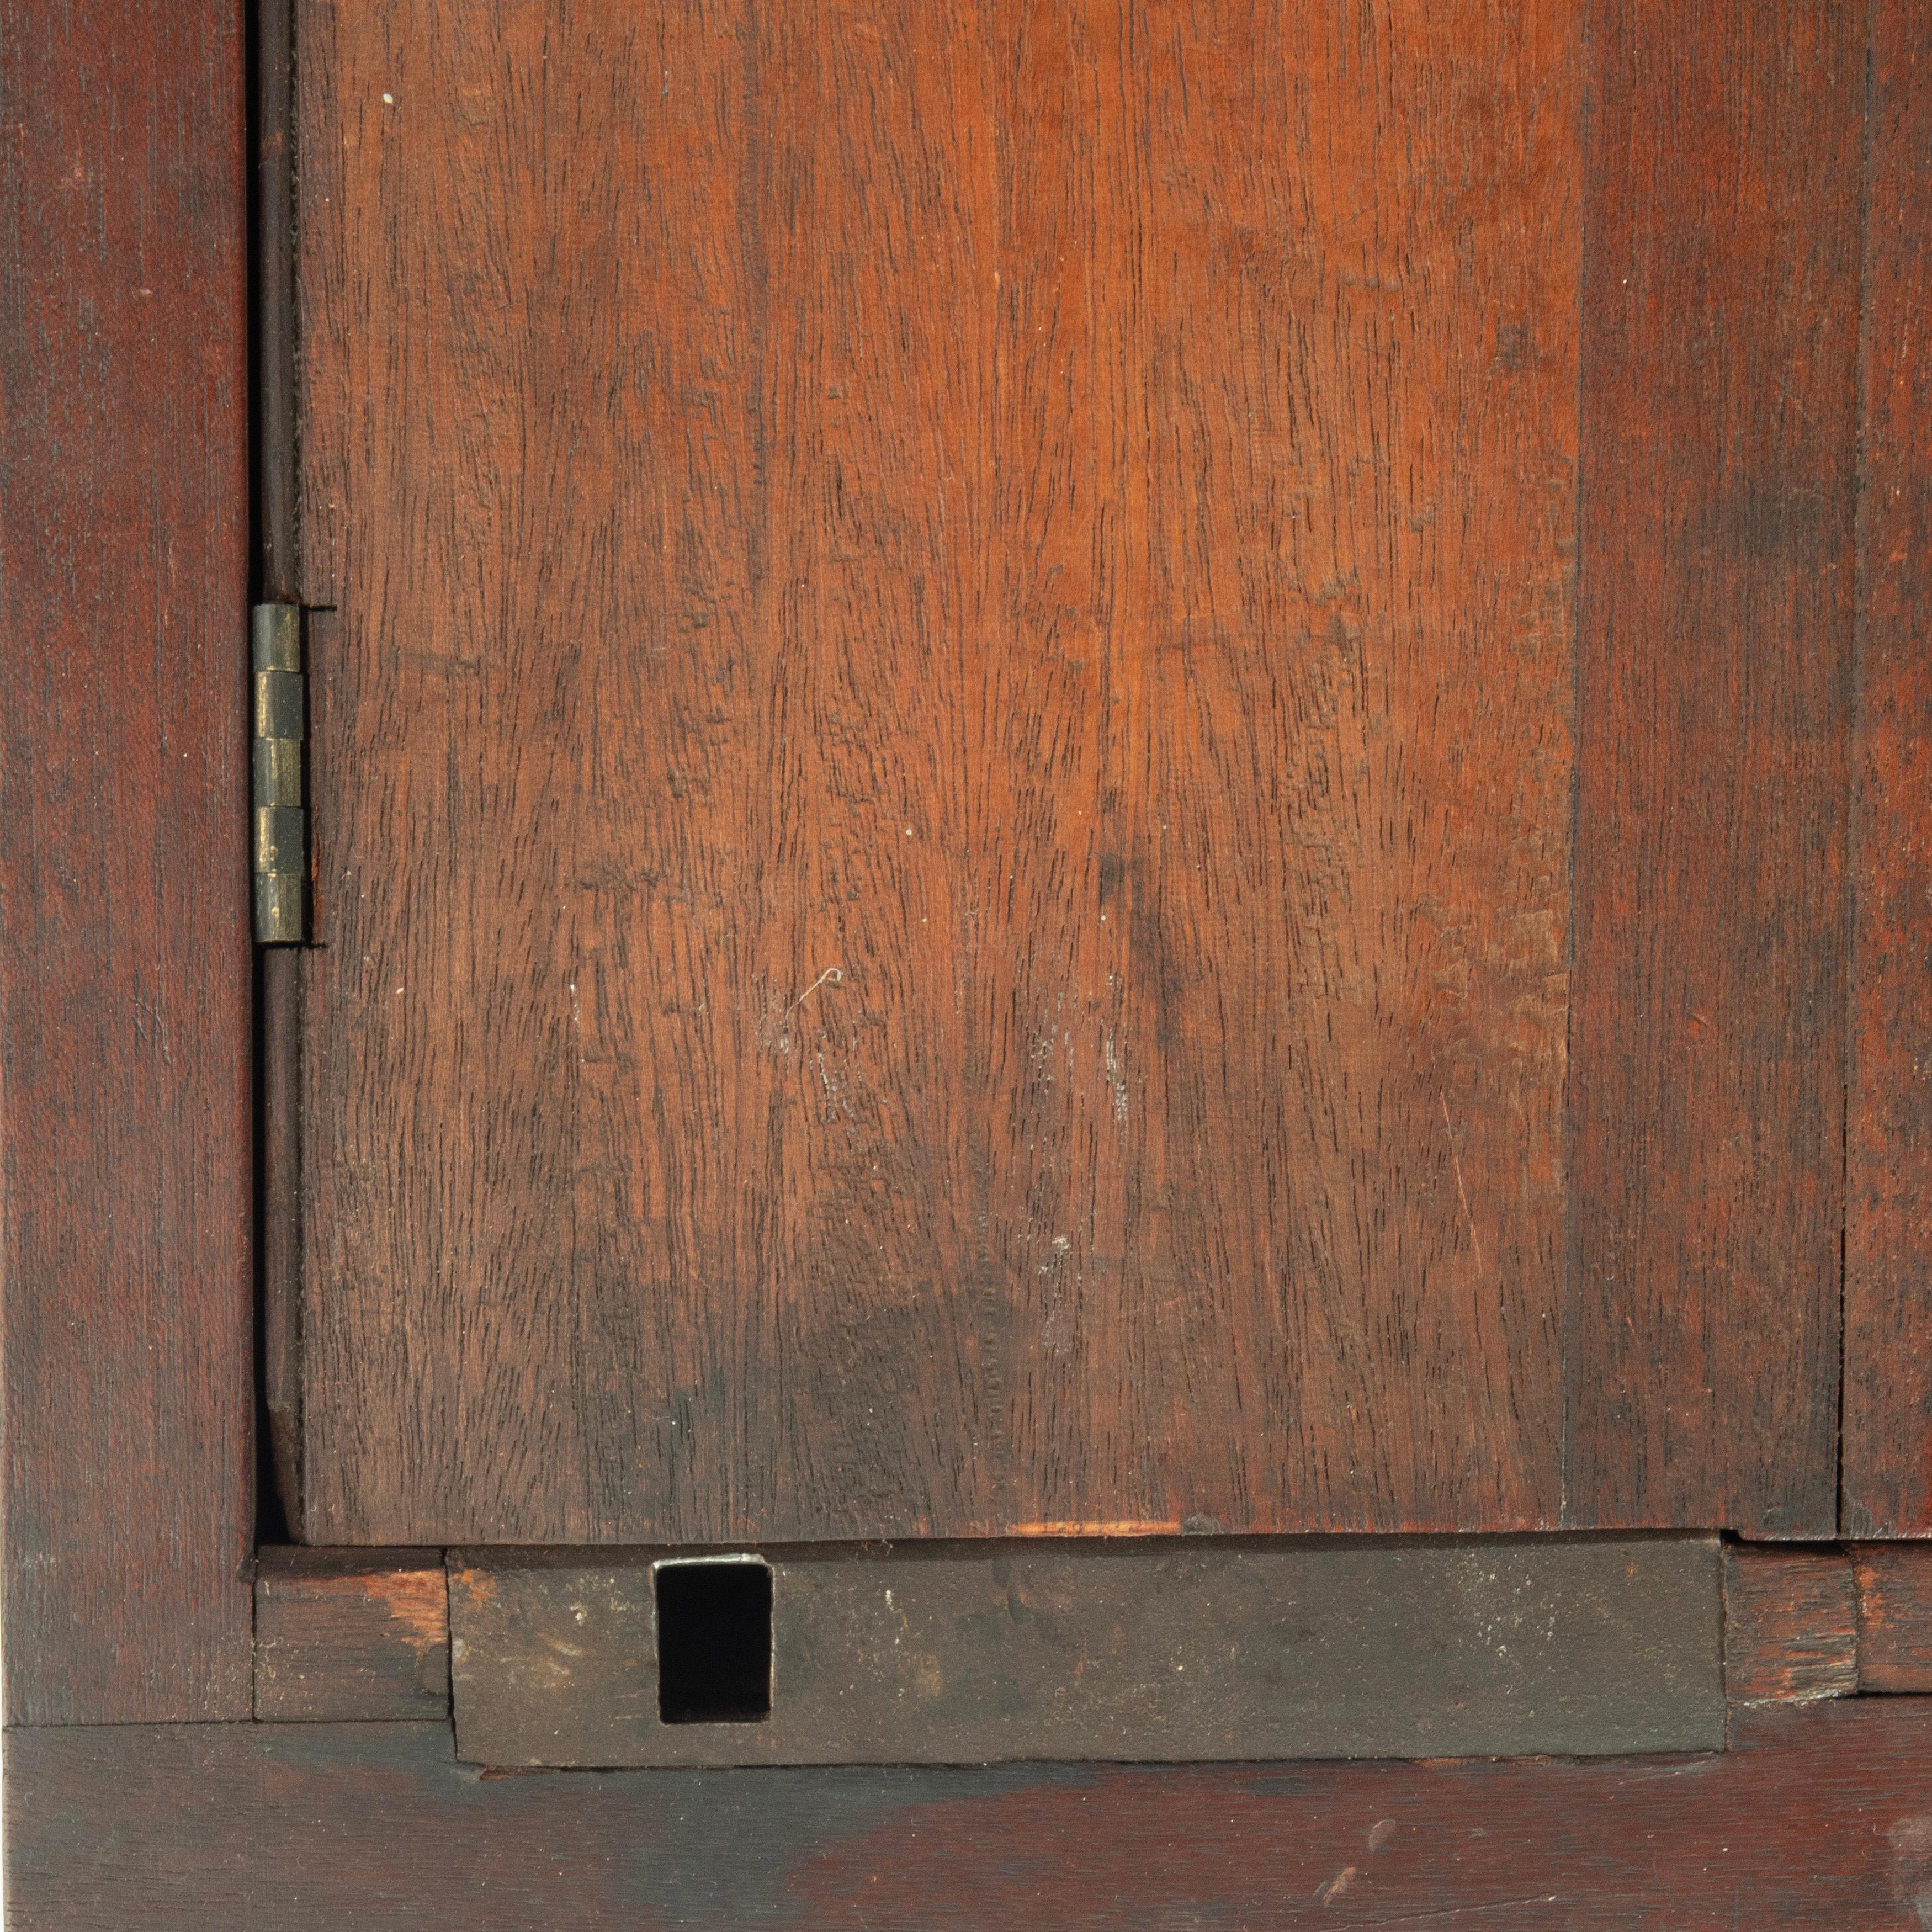 Eine Mahagoni-Tresorschatulle, hergestellt für die Ovenden Female Society, gegründet im Mai 1809, mit tiefer, rechteckiger Form, aufklappbarem Deckel, drei Messingschlössern, Tragegriffen aus Messing und einer aufgelegten Messingplakette mit der